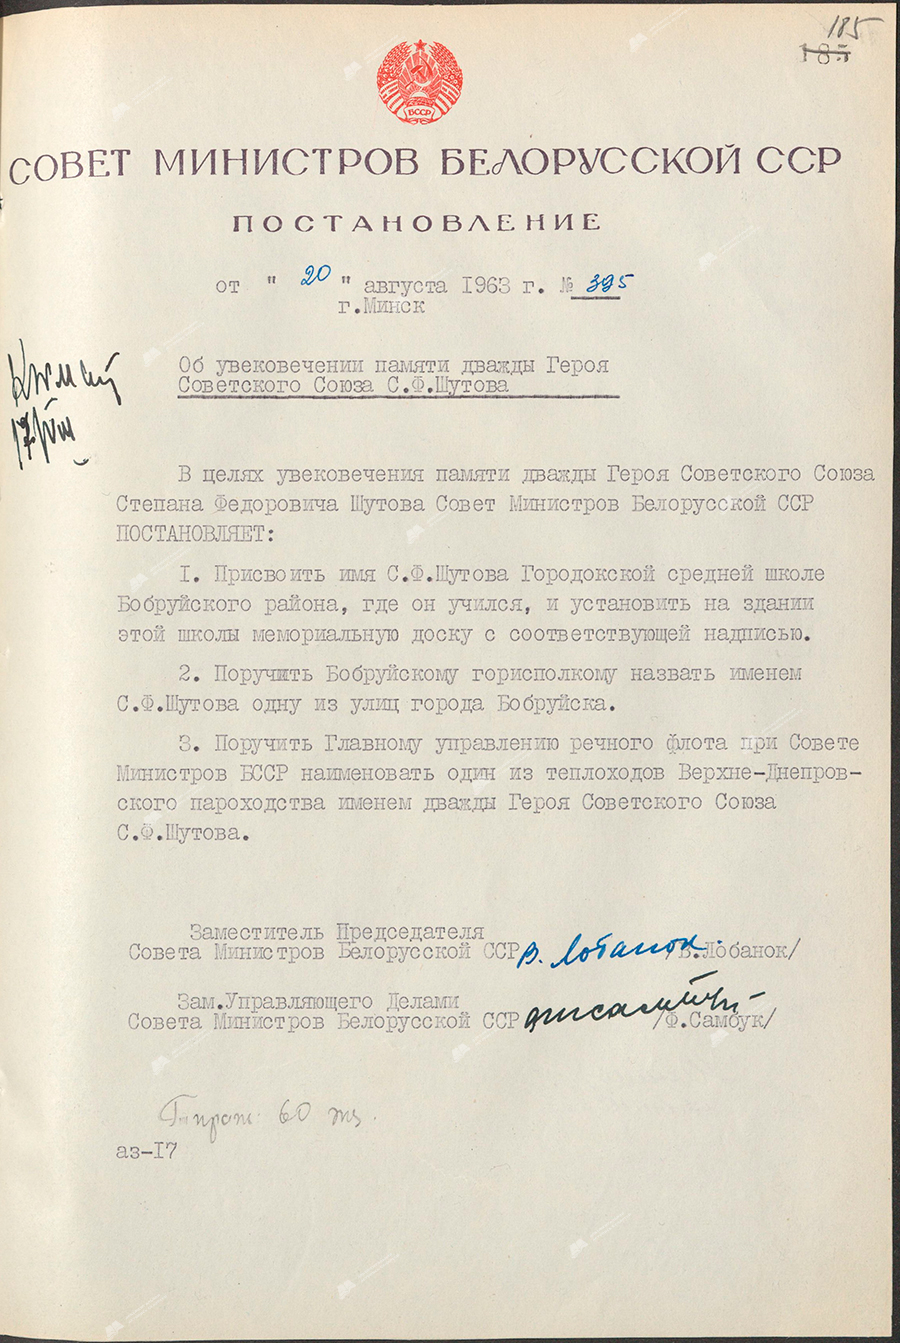 Beschluss Nr. 395 des Ministerrates der BSSR «Über die Verewigung des Gedächtnisses des zweimal Helden der Sowjetunion, S.F. Shutov»-стр. 0